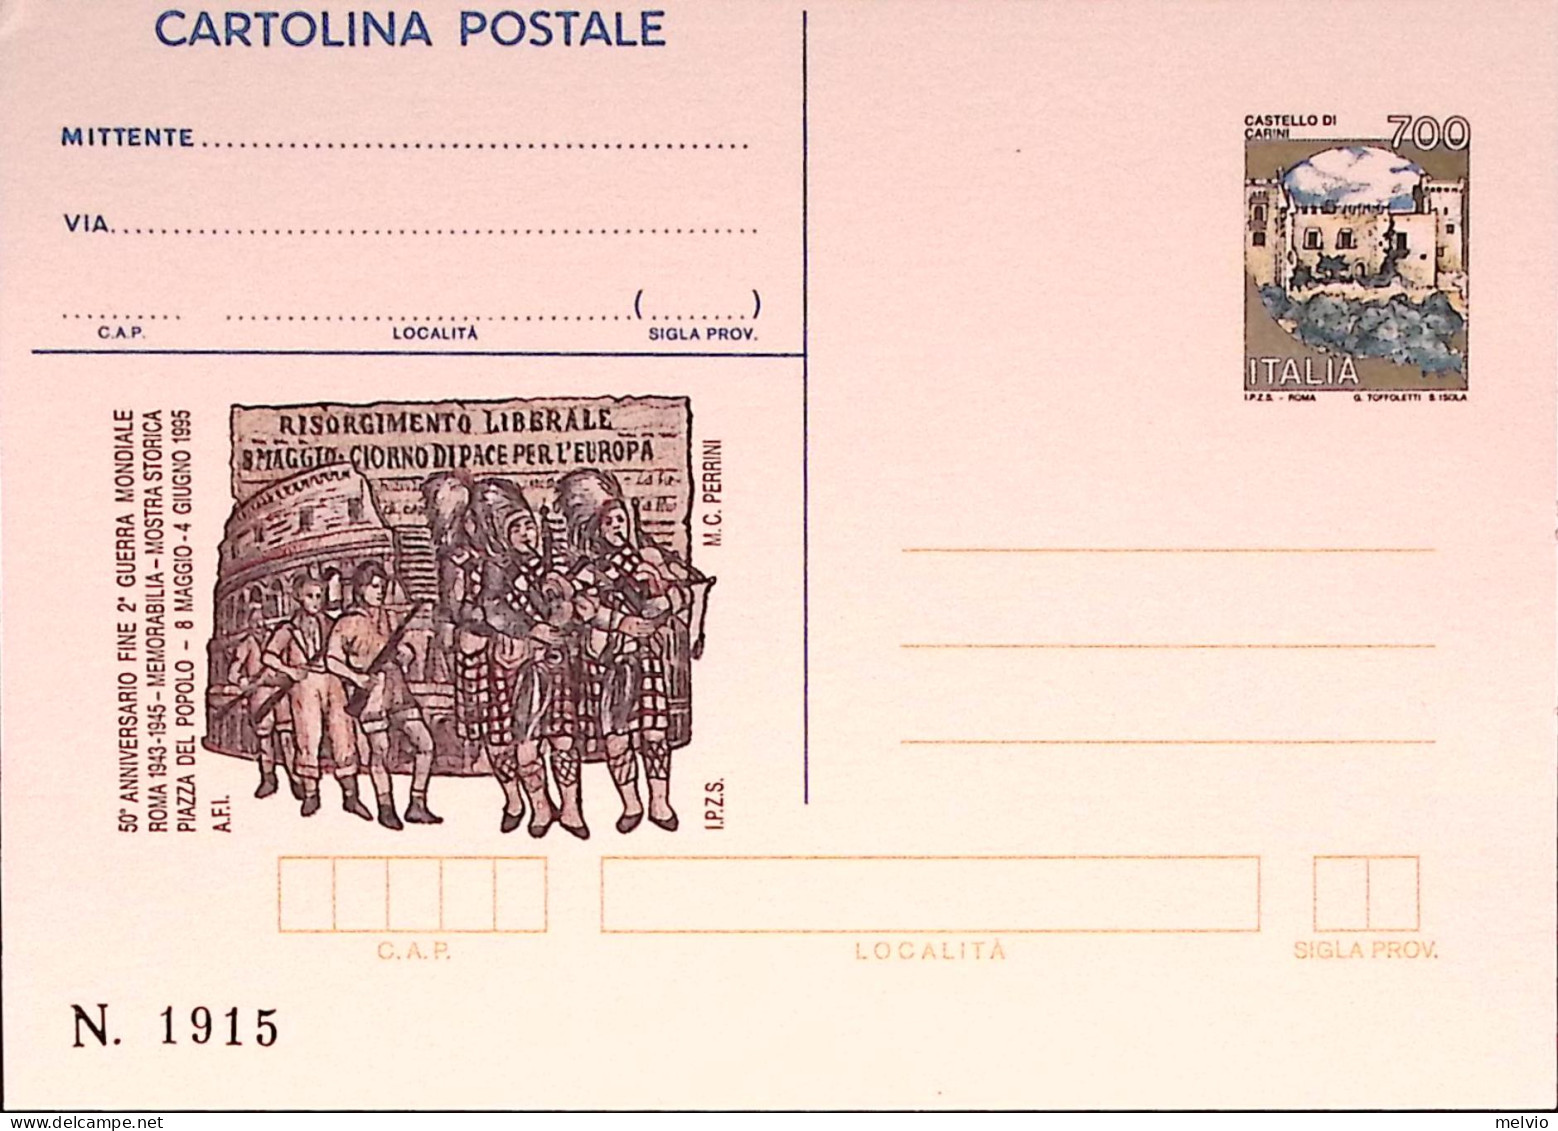 1995-FINE 2 G.M. Cartolina Postale IPZS Lire 700 Nuova - Entero Postal